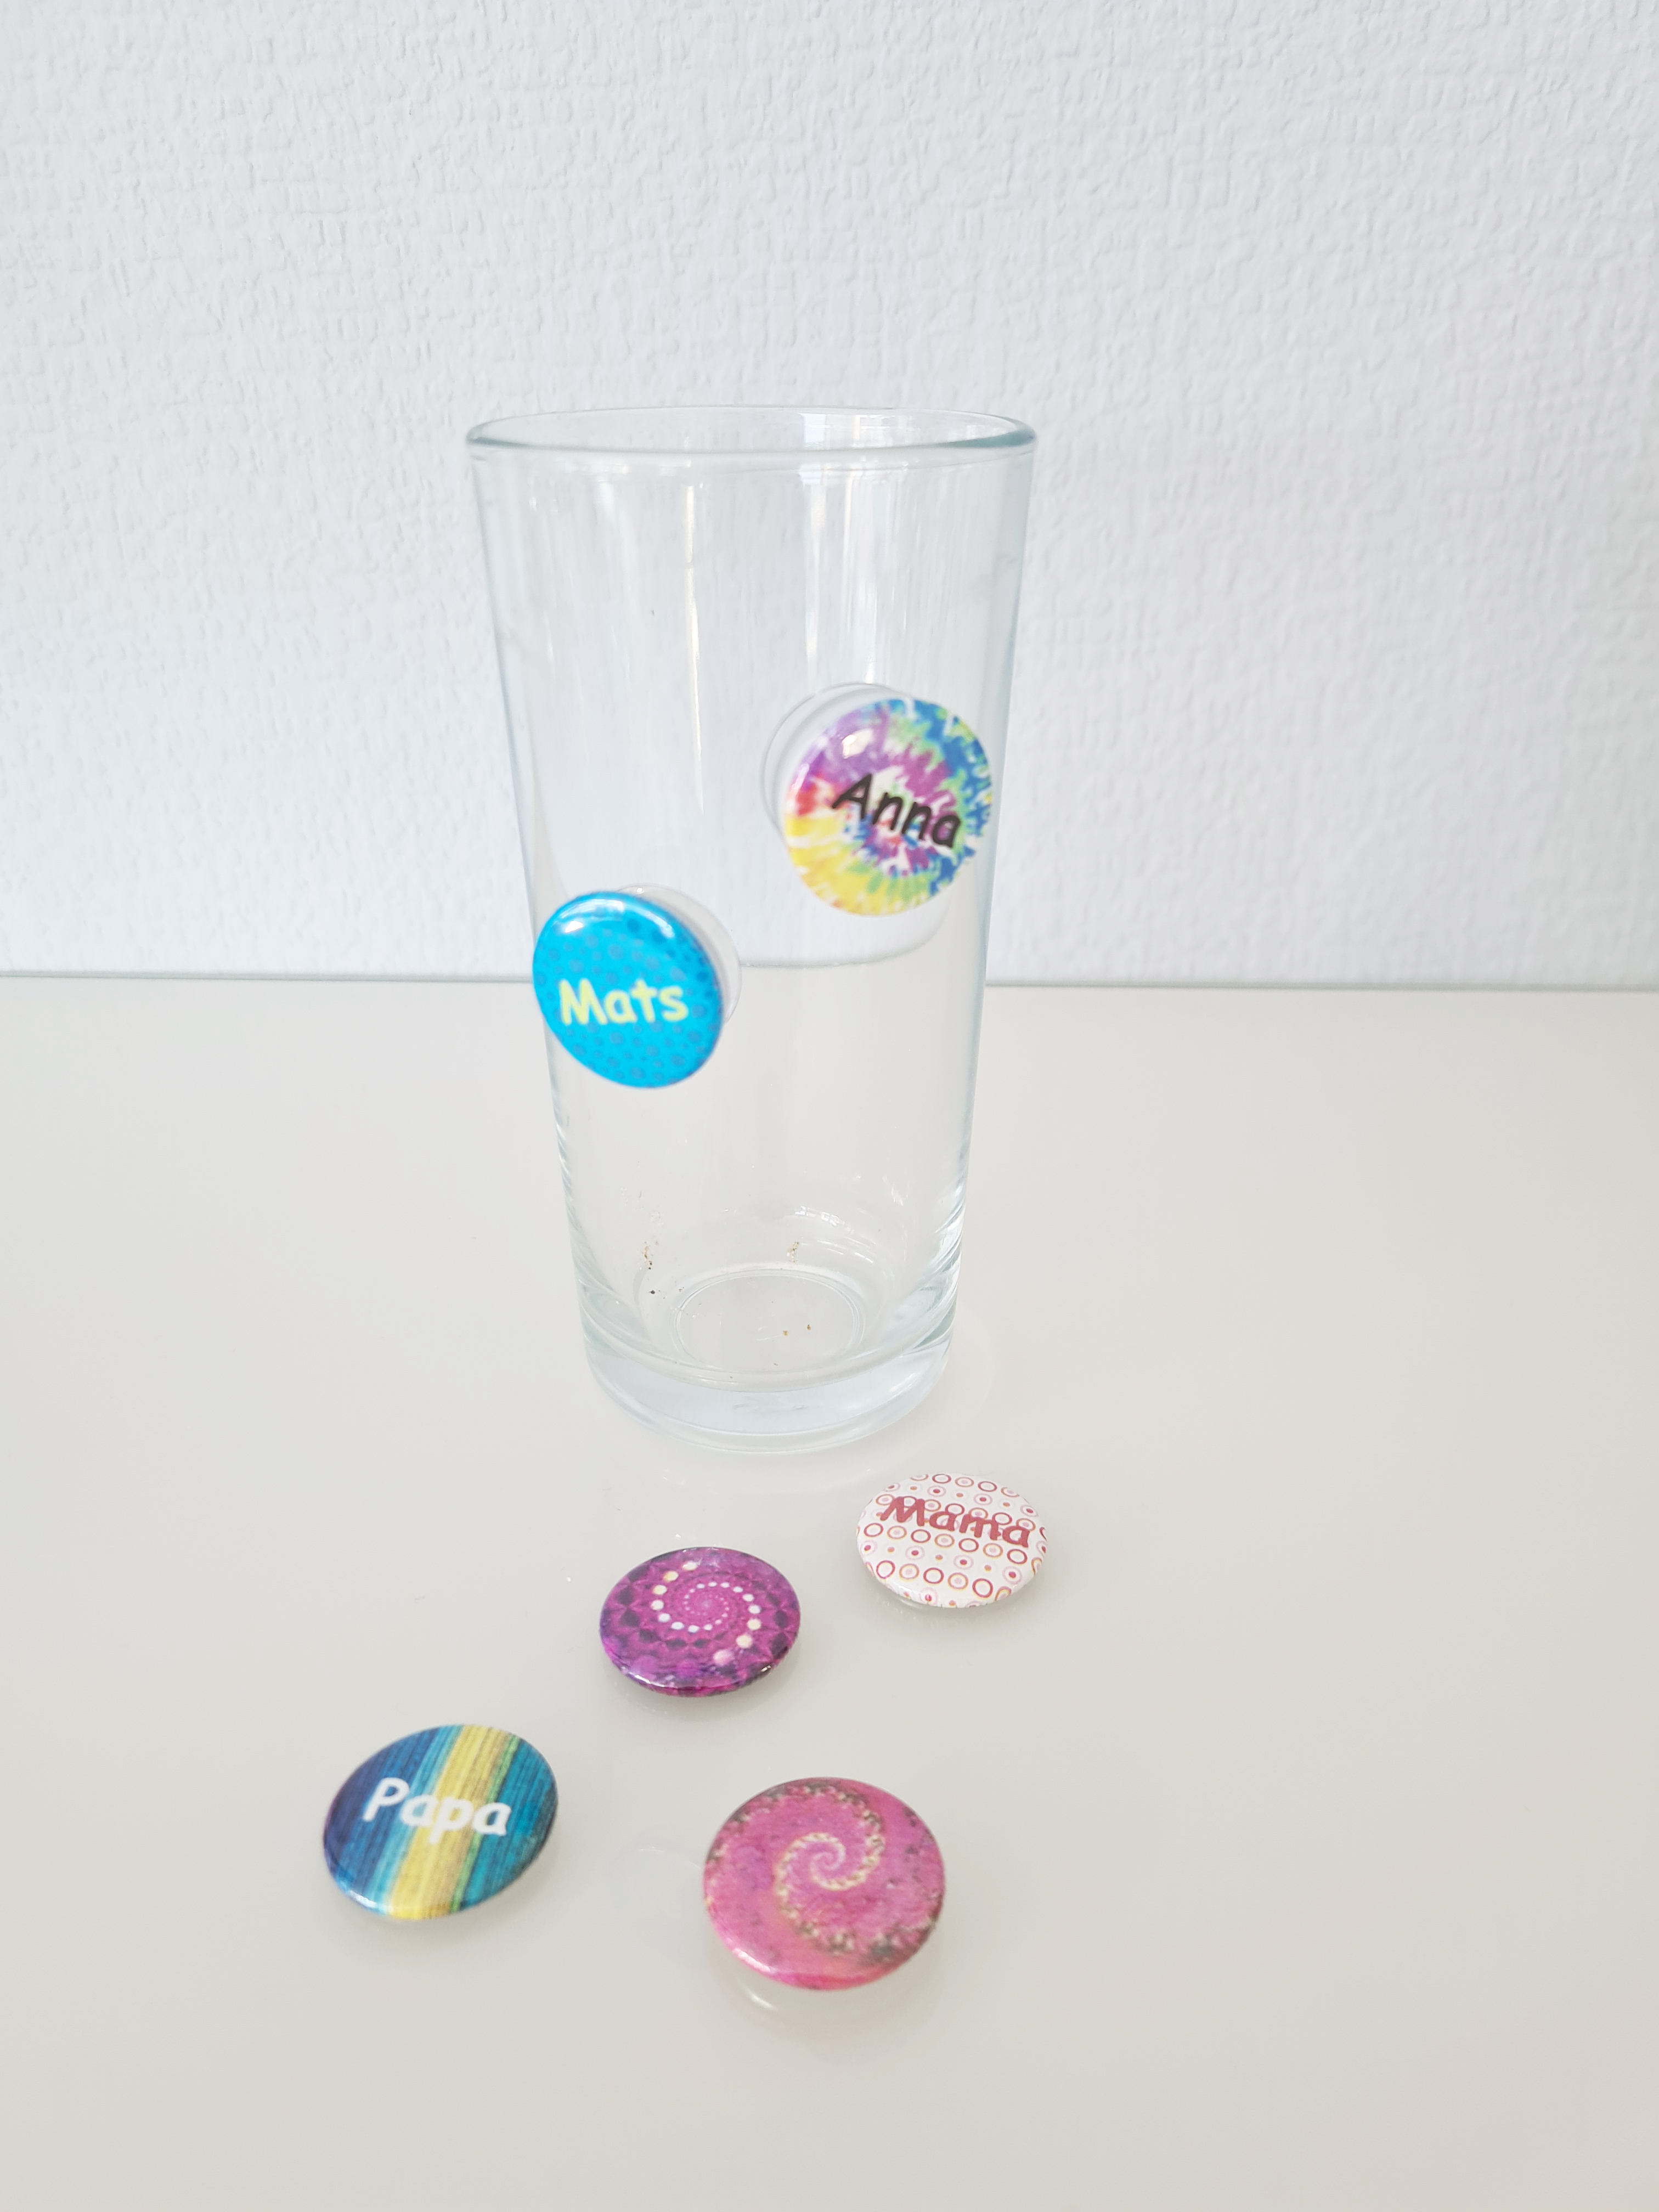 PROST-it Glasmarkierer Set "Bunt Dots" für Gläser oder Flaschen